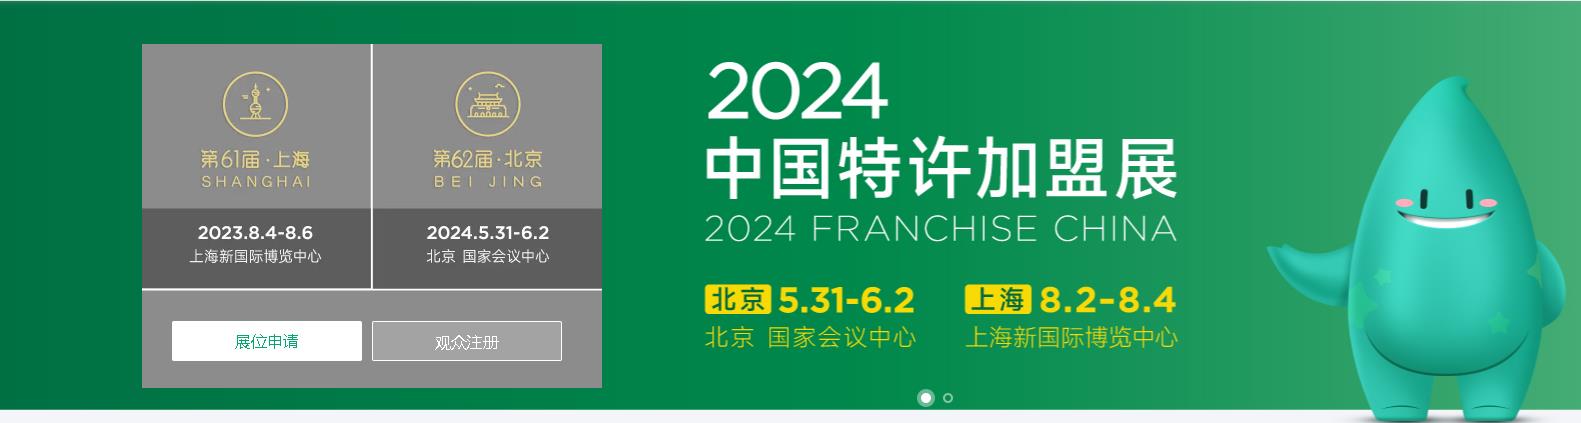 2024第62届中国特许加盟展（北京站）